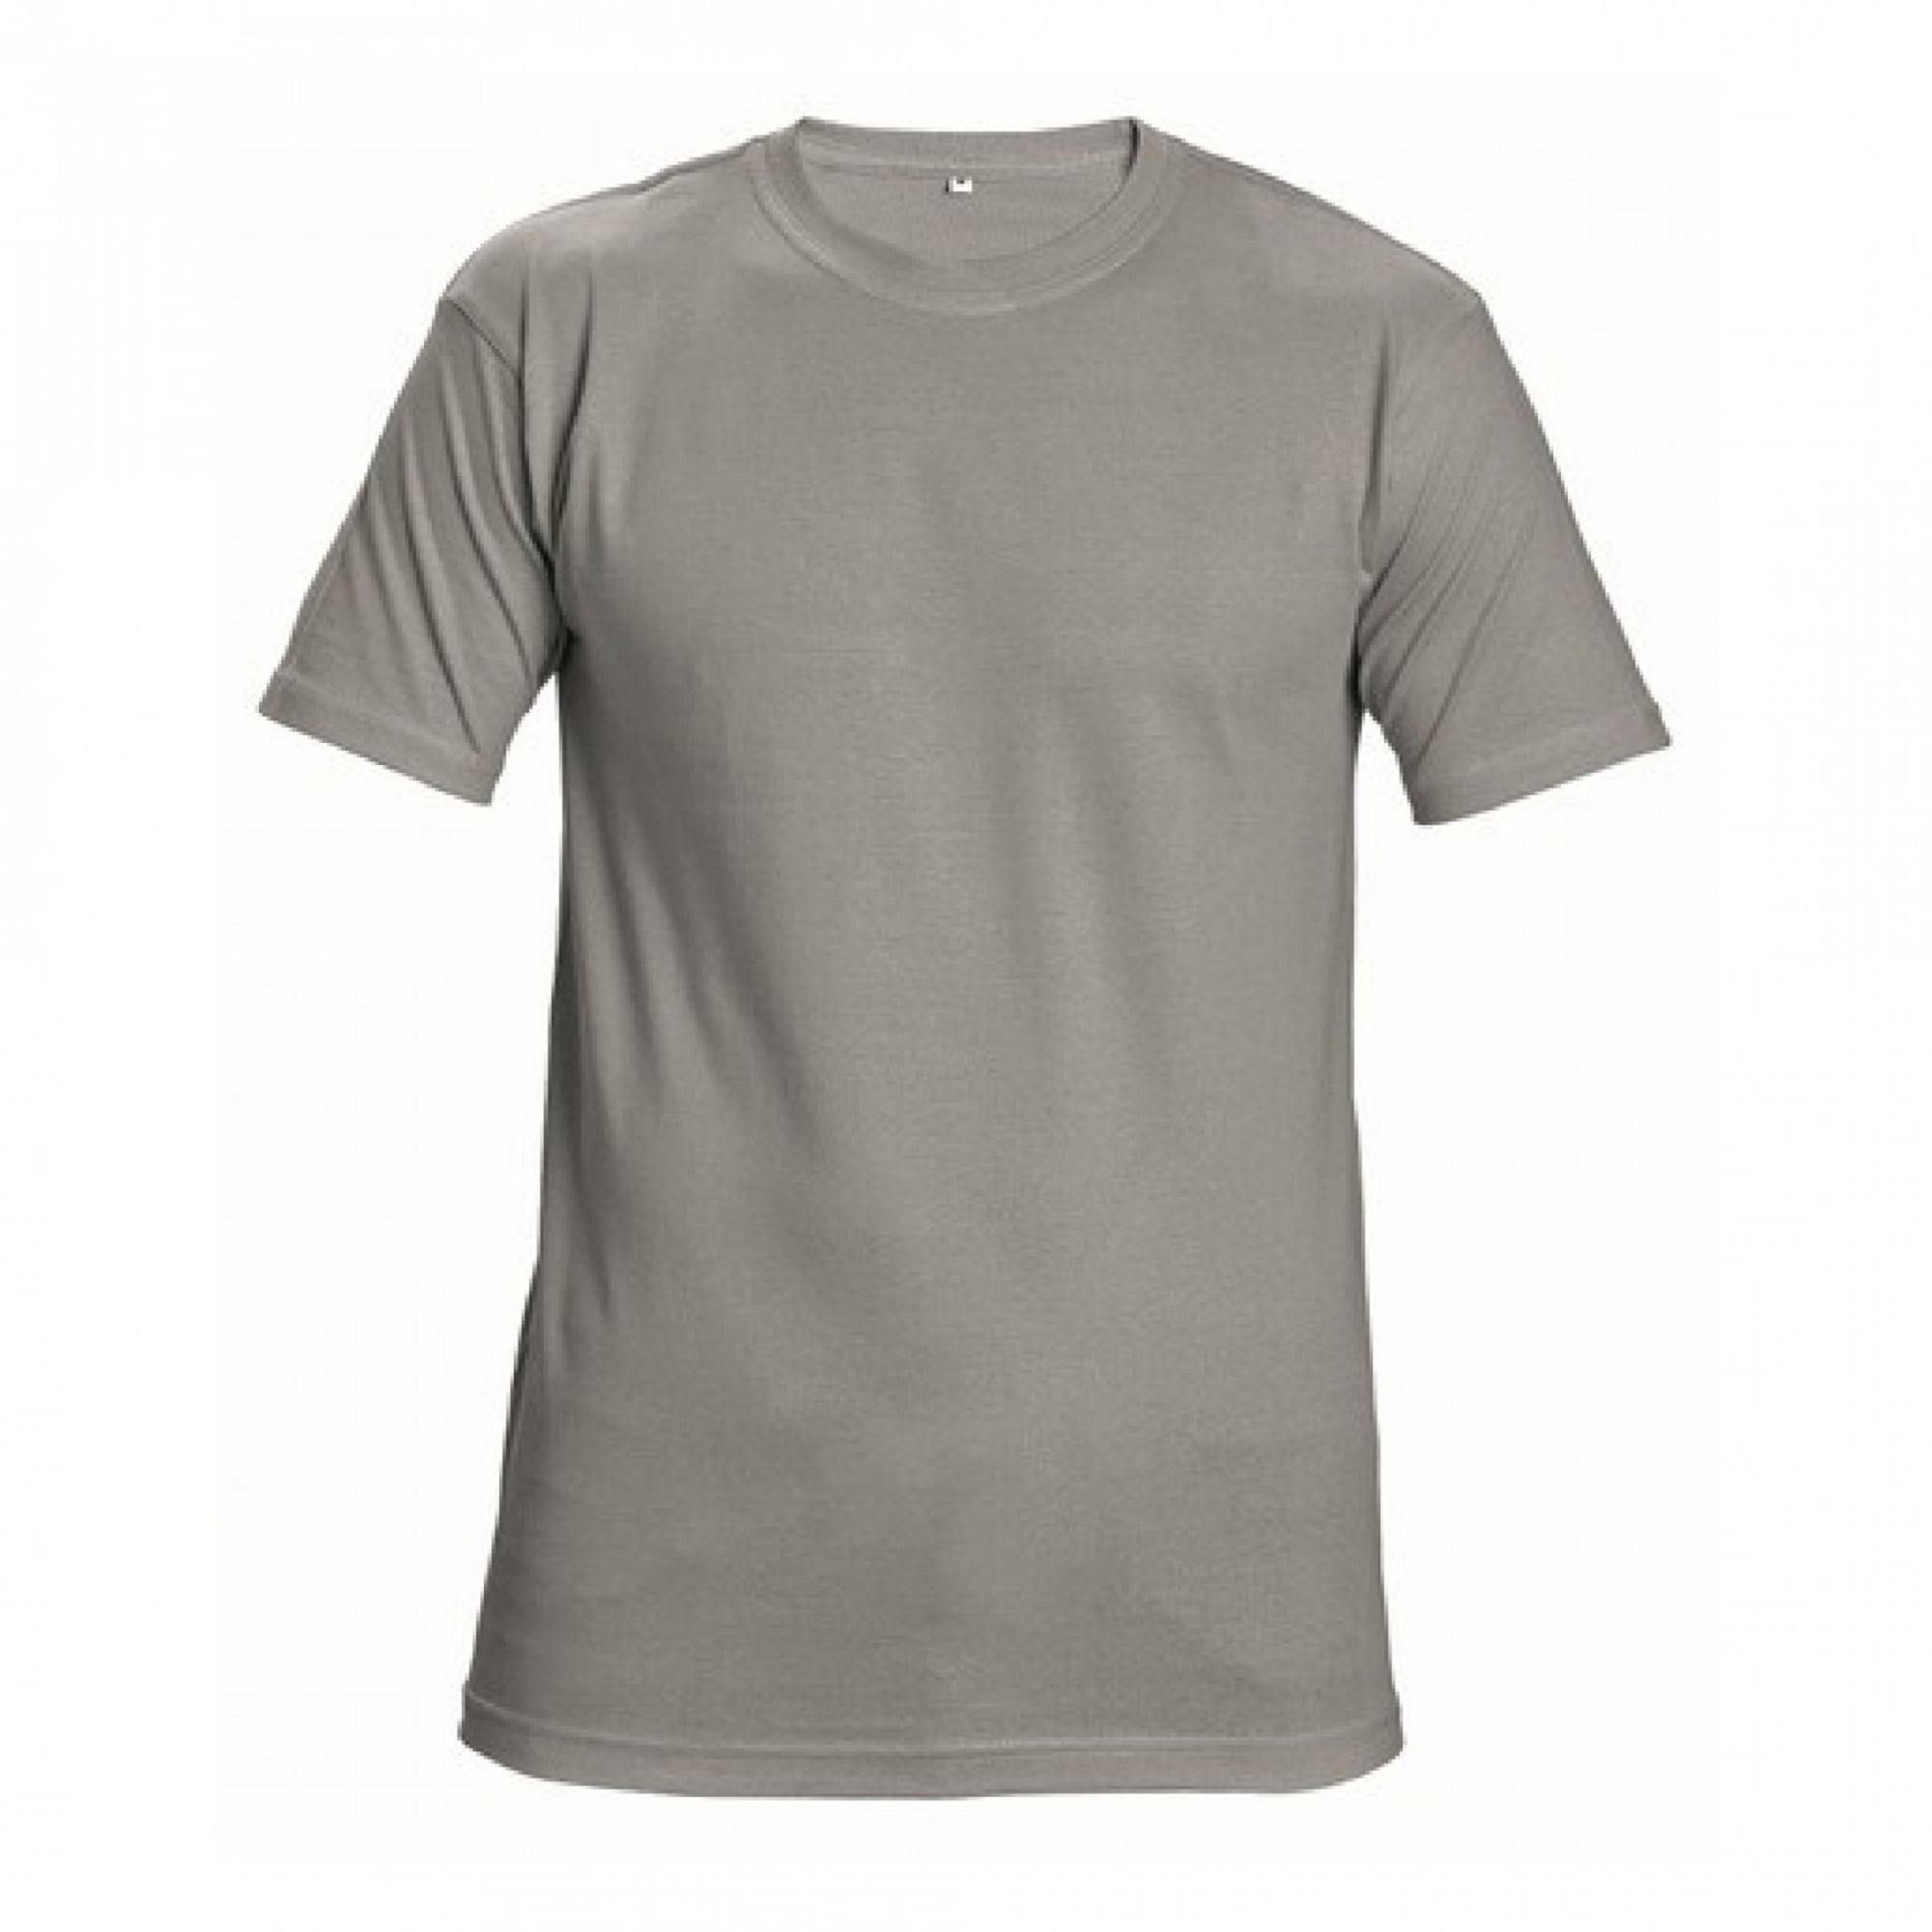 T-Shirt Teesta 160gr ronde hals 100% katoen grijs maat S